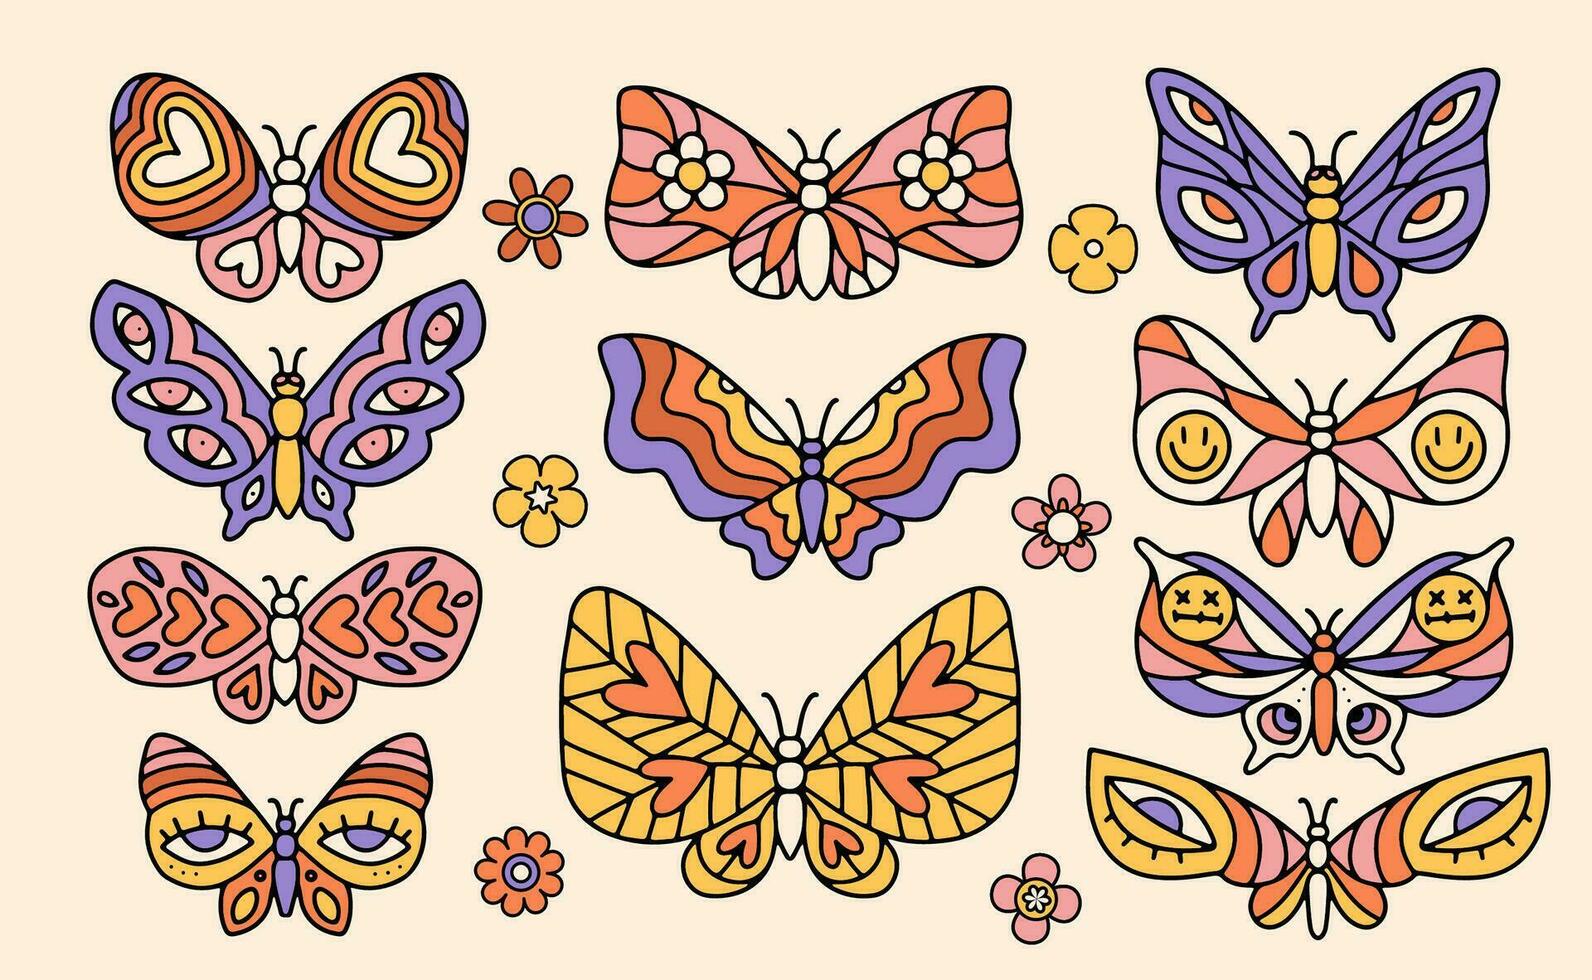 impostato di retrò Groovy farfalle nel di moda 60s 70s stile. mano disegnato lineare vettore illustrazione.